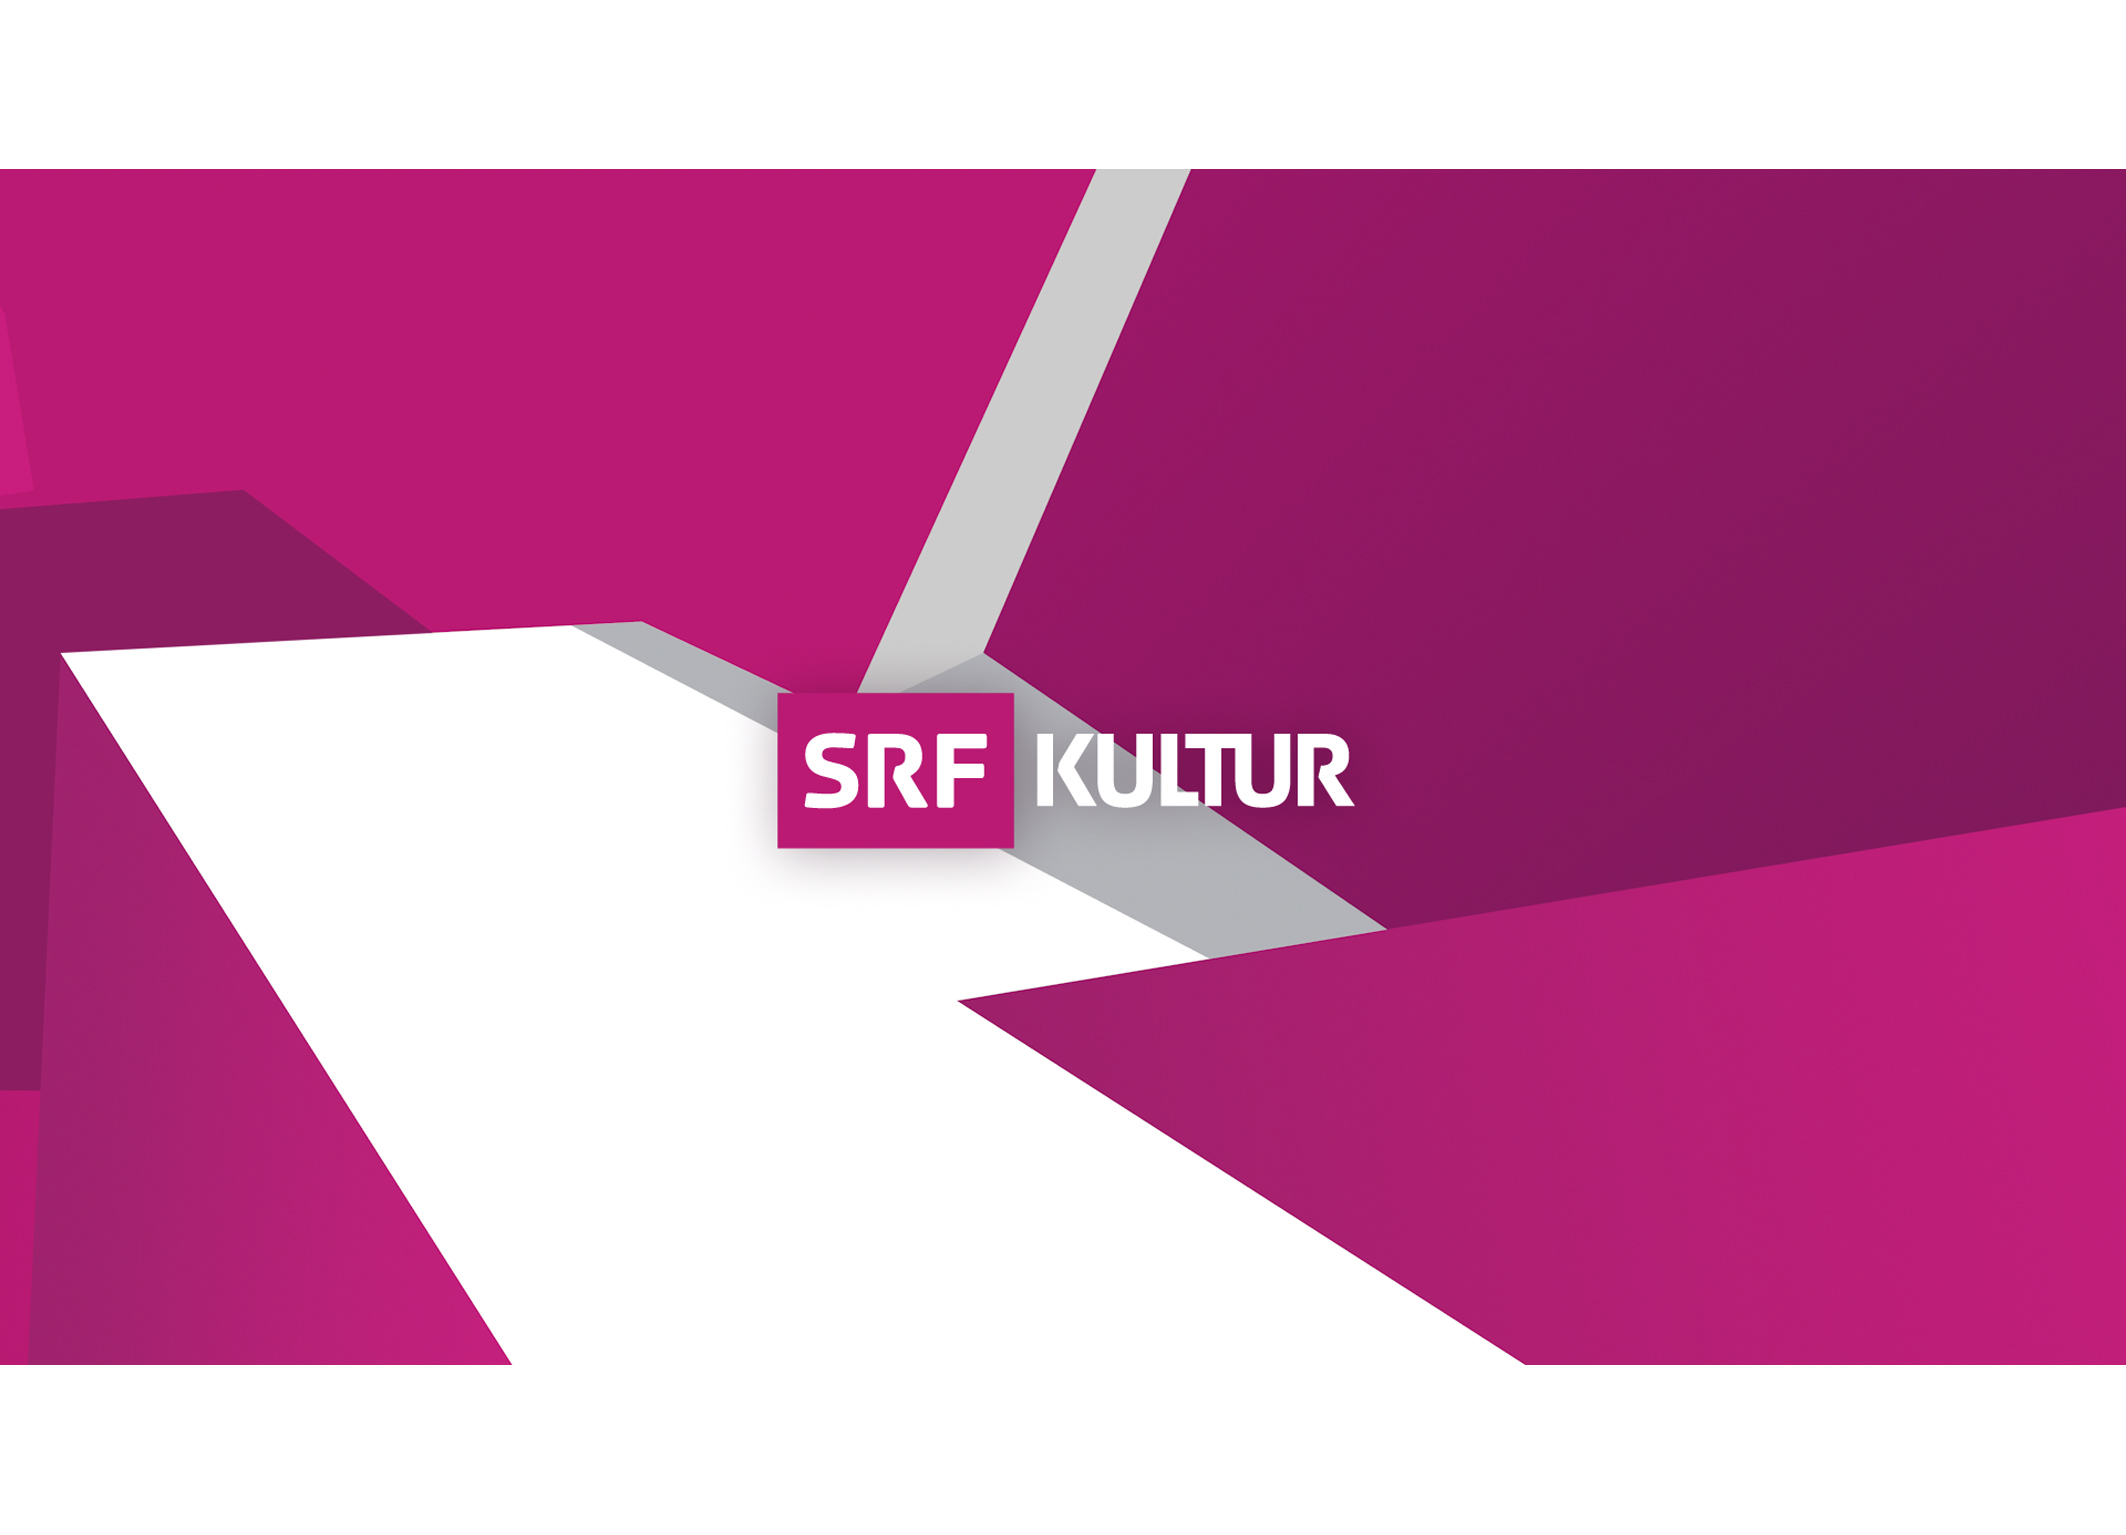 SRF Kultur Keyvisual